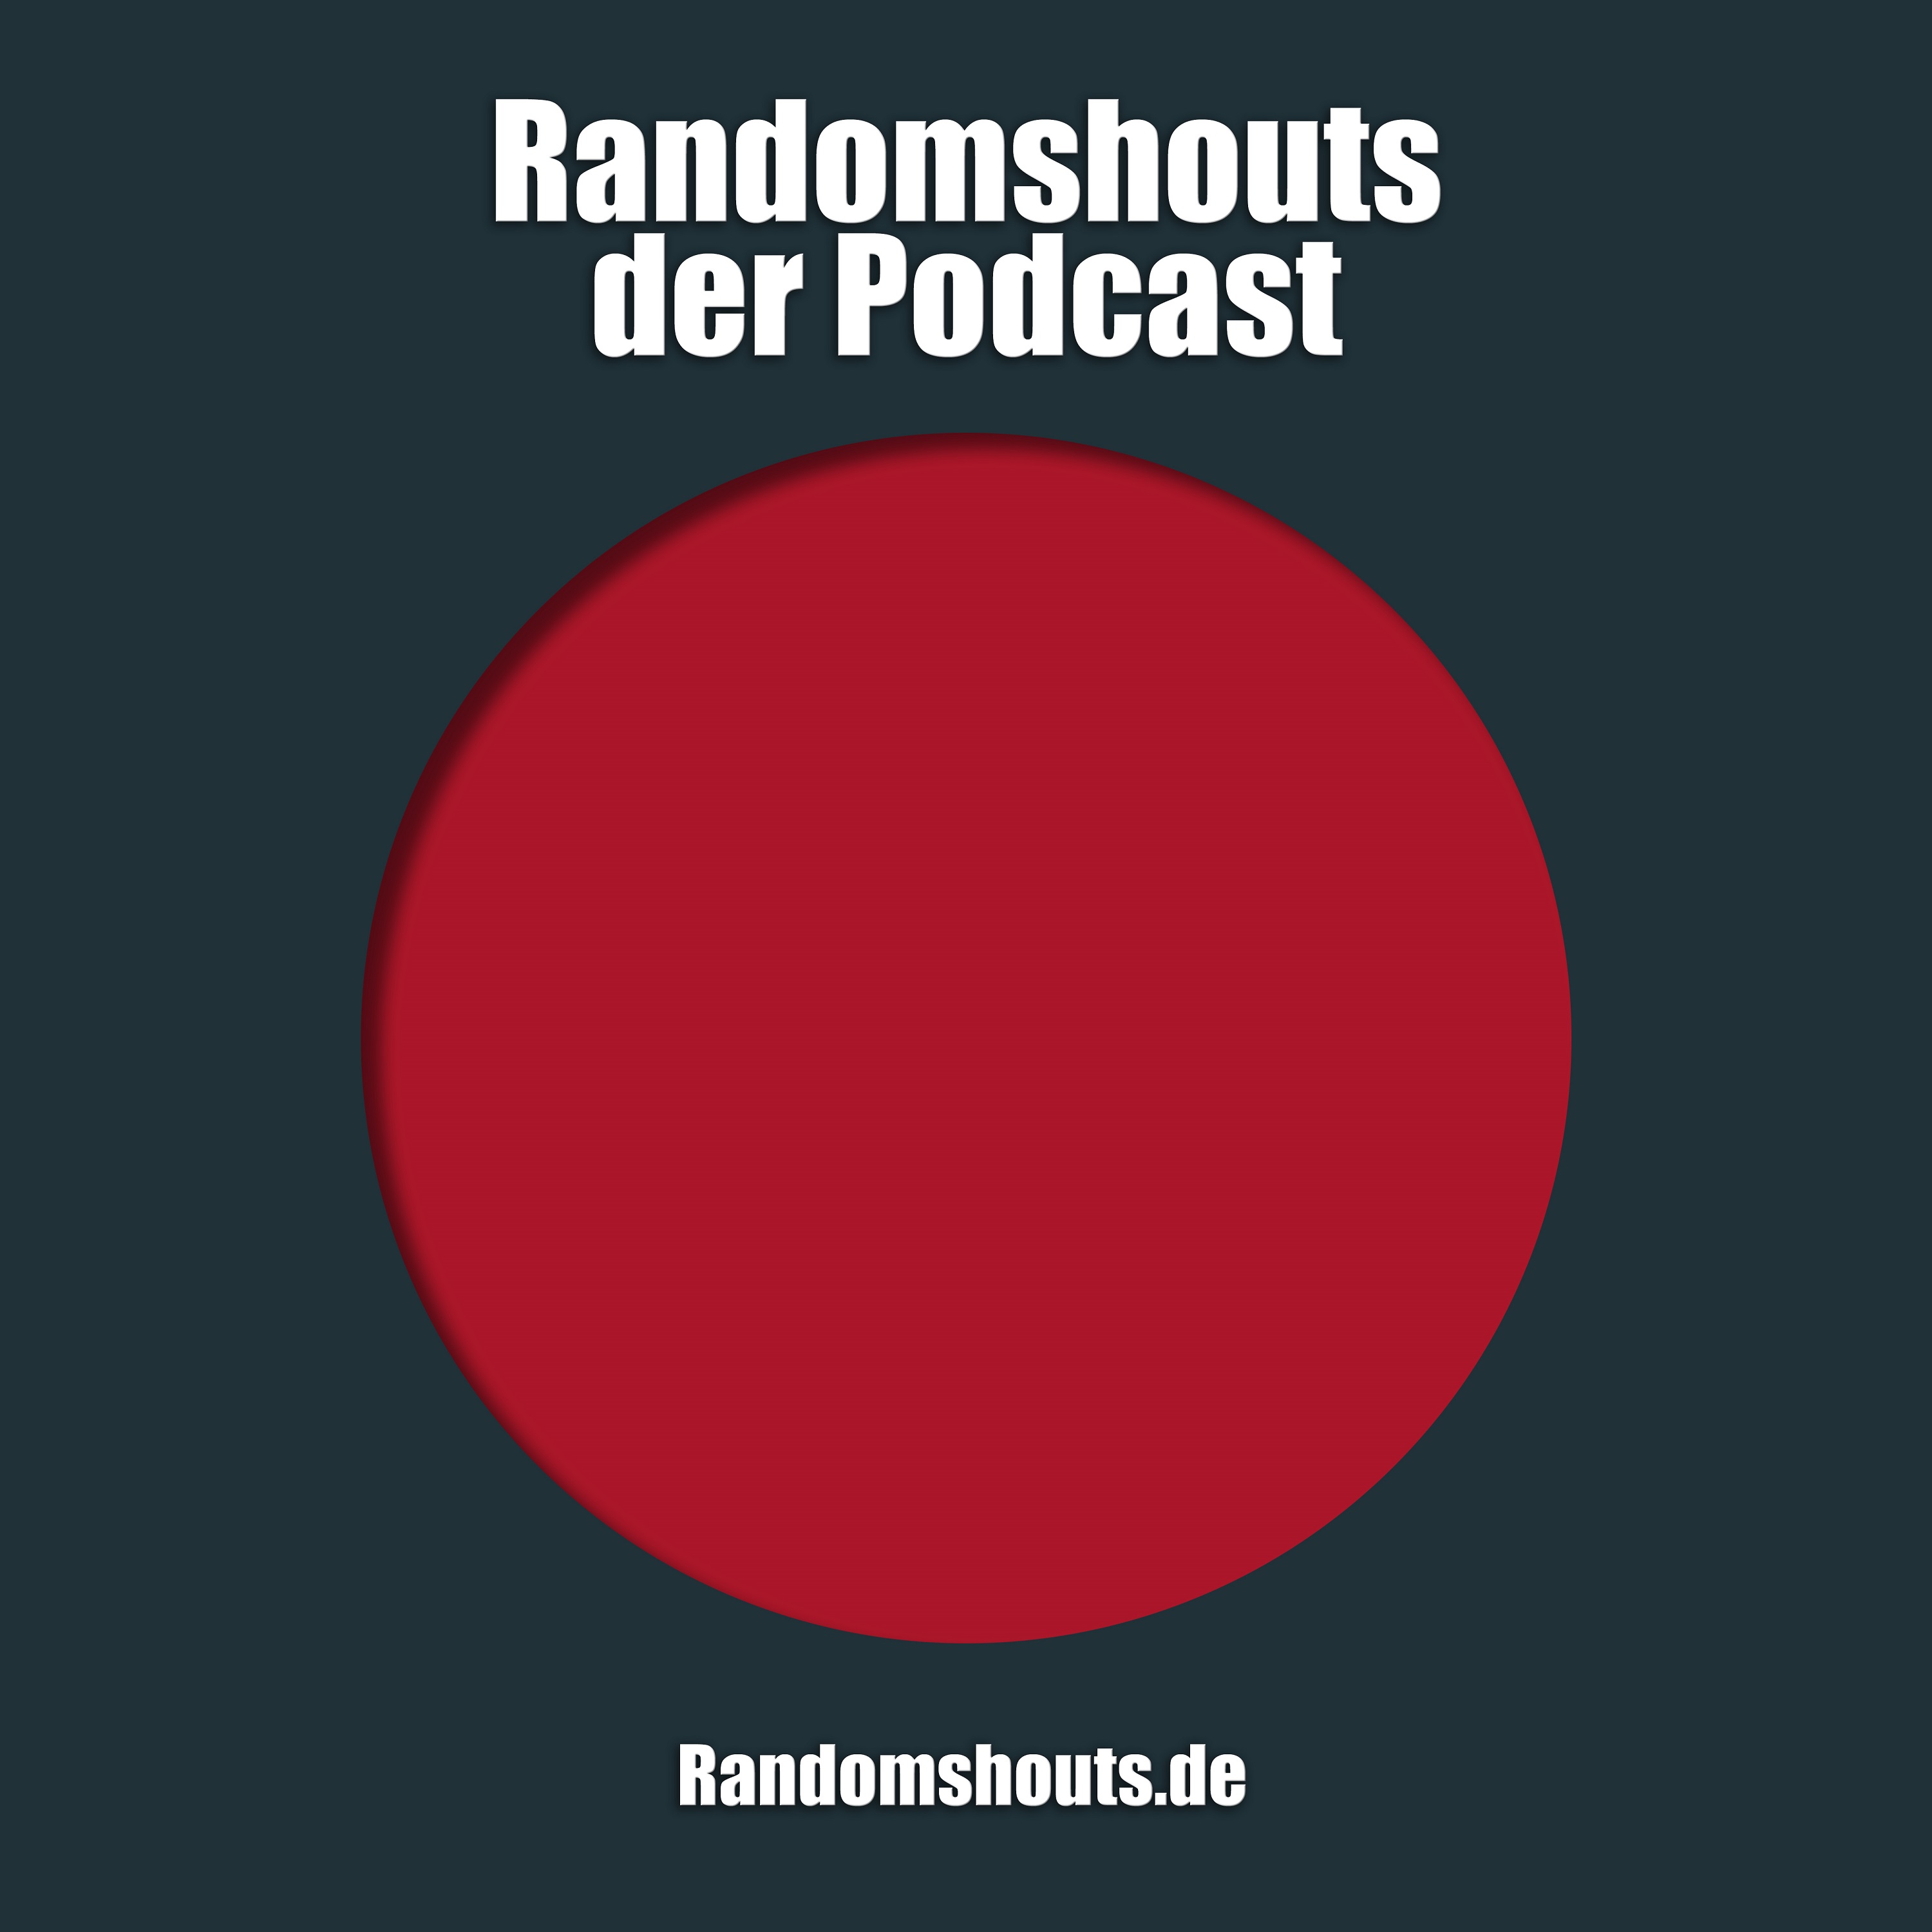 Randomshouts der Podcast - Episode 3: Die große Pinkelpause